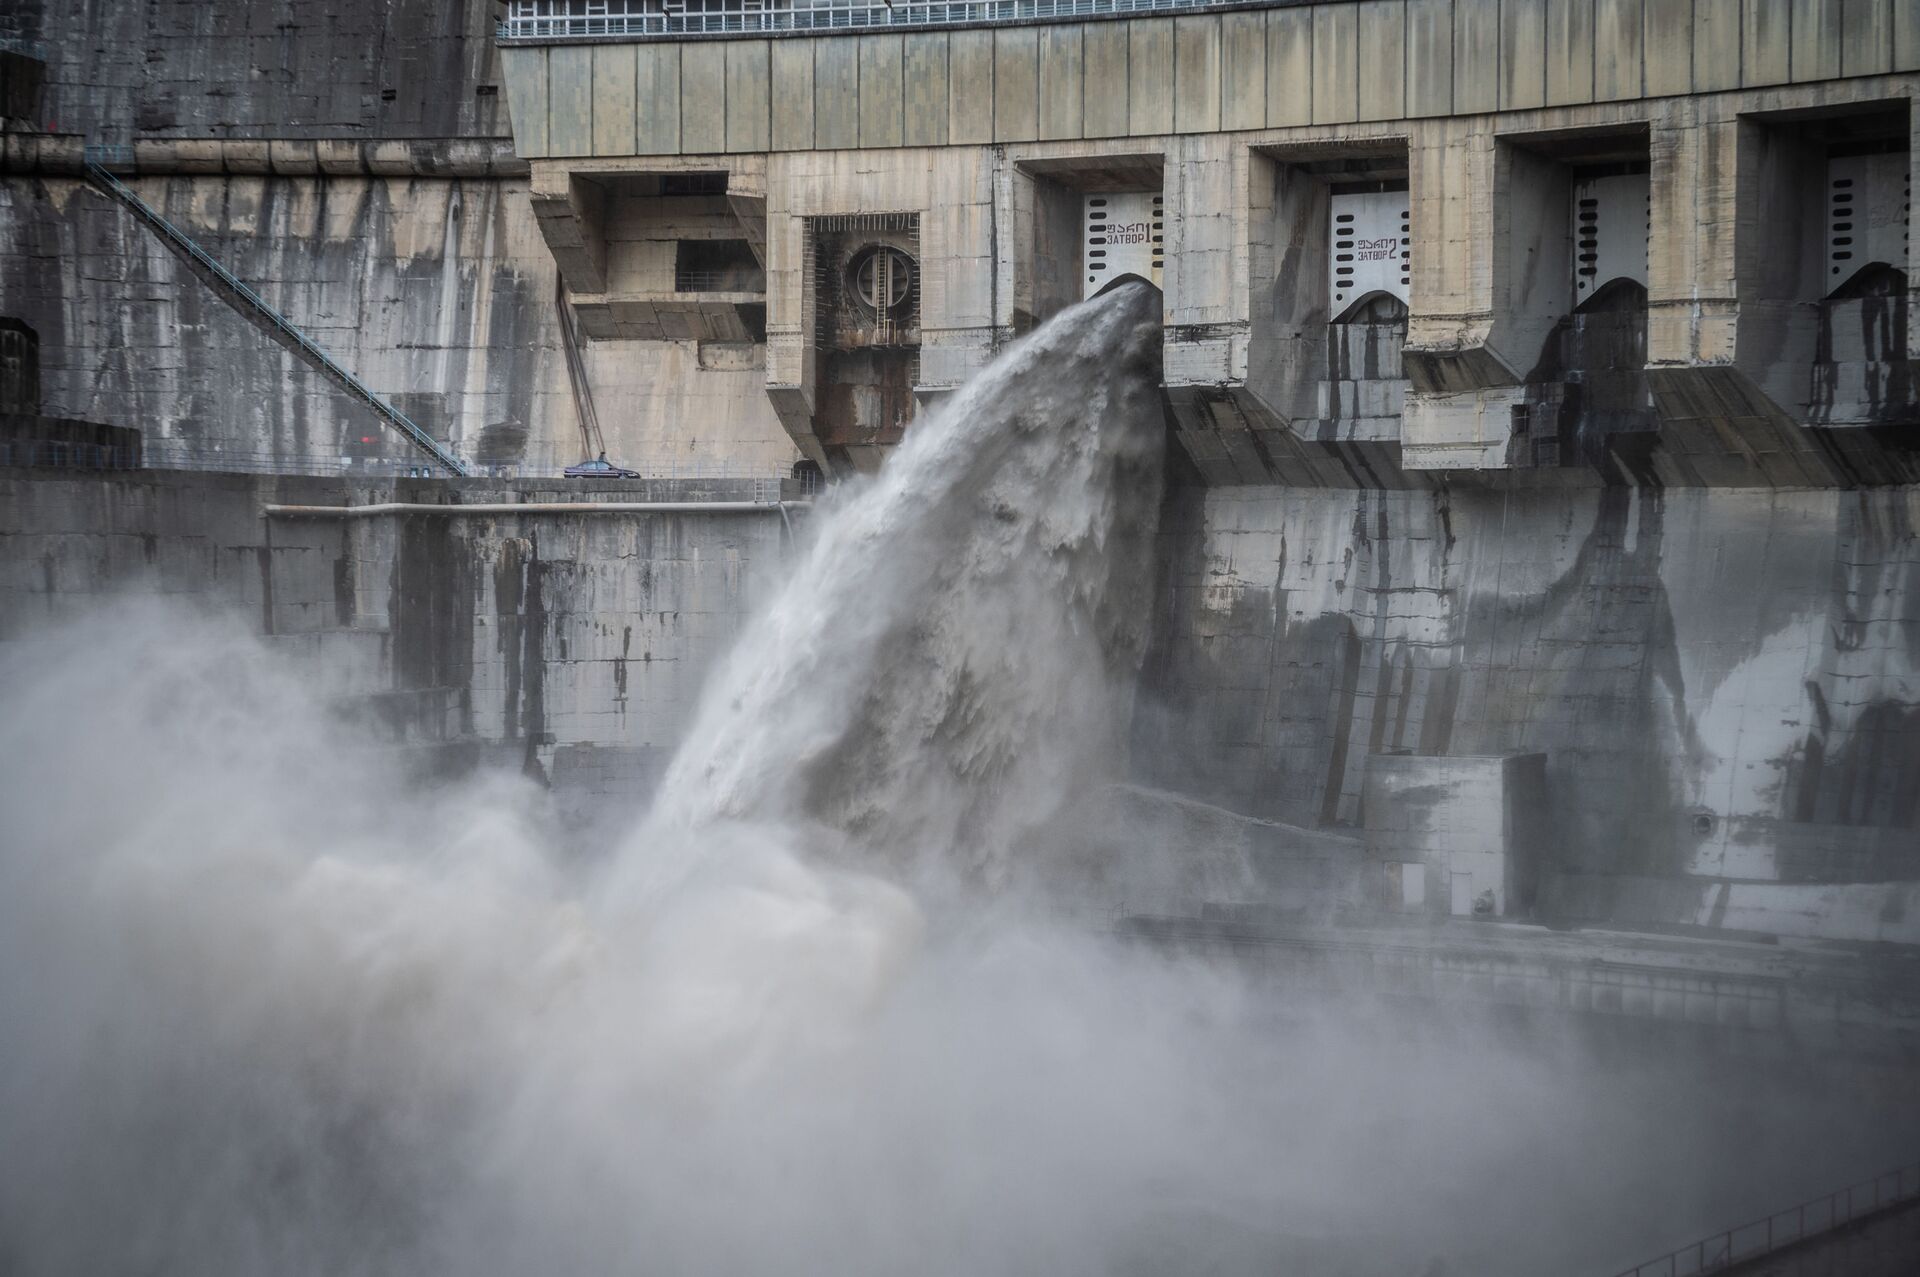 Закрыто на ремонт: Ингури ГЭС снова заработает в мае - Sputnik Грузия, 1920, 28.02.2021